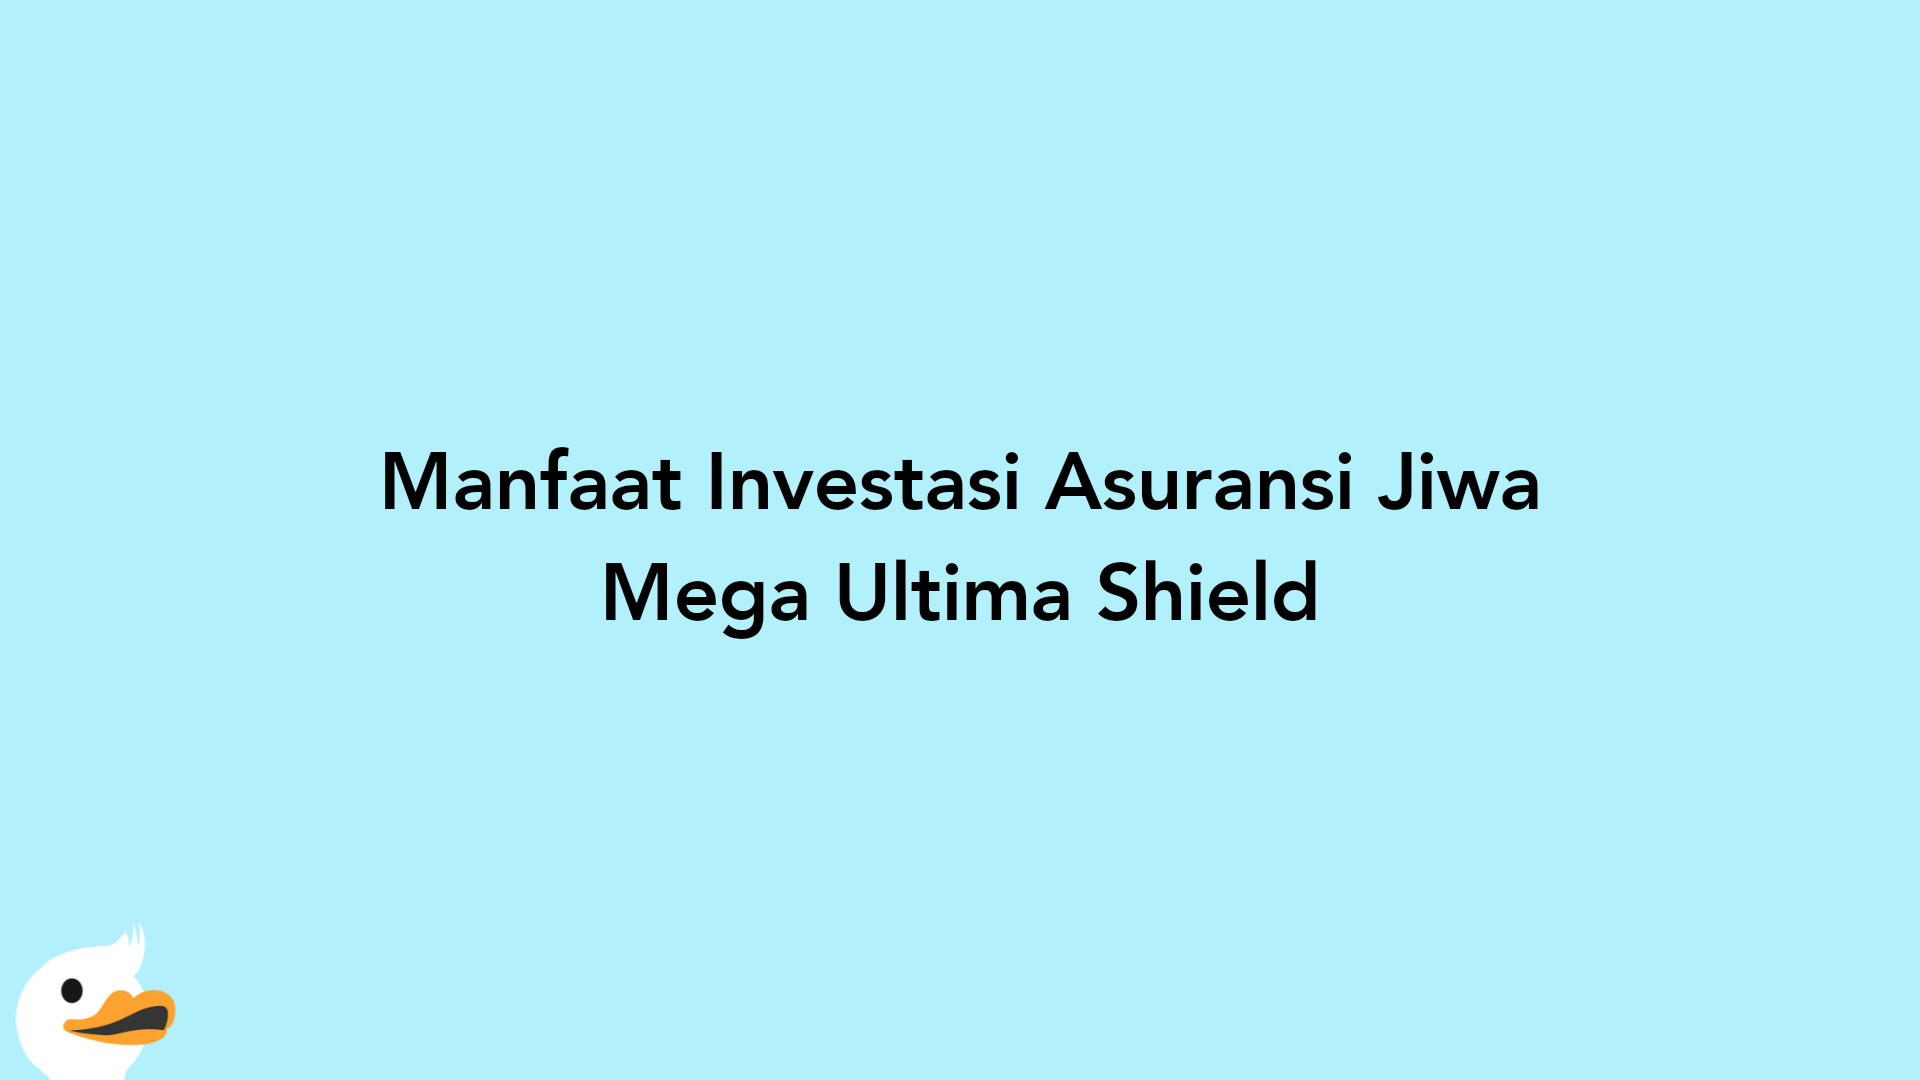 Manfaat Investasi Asuransi Jiwa Mega Ultima Shield